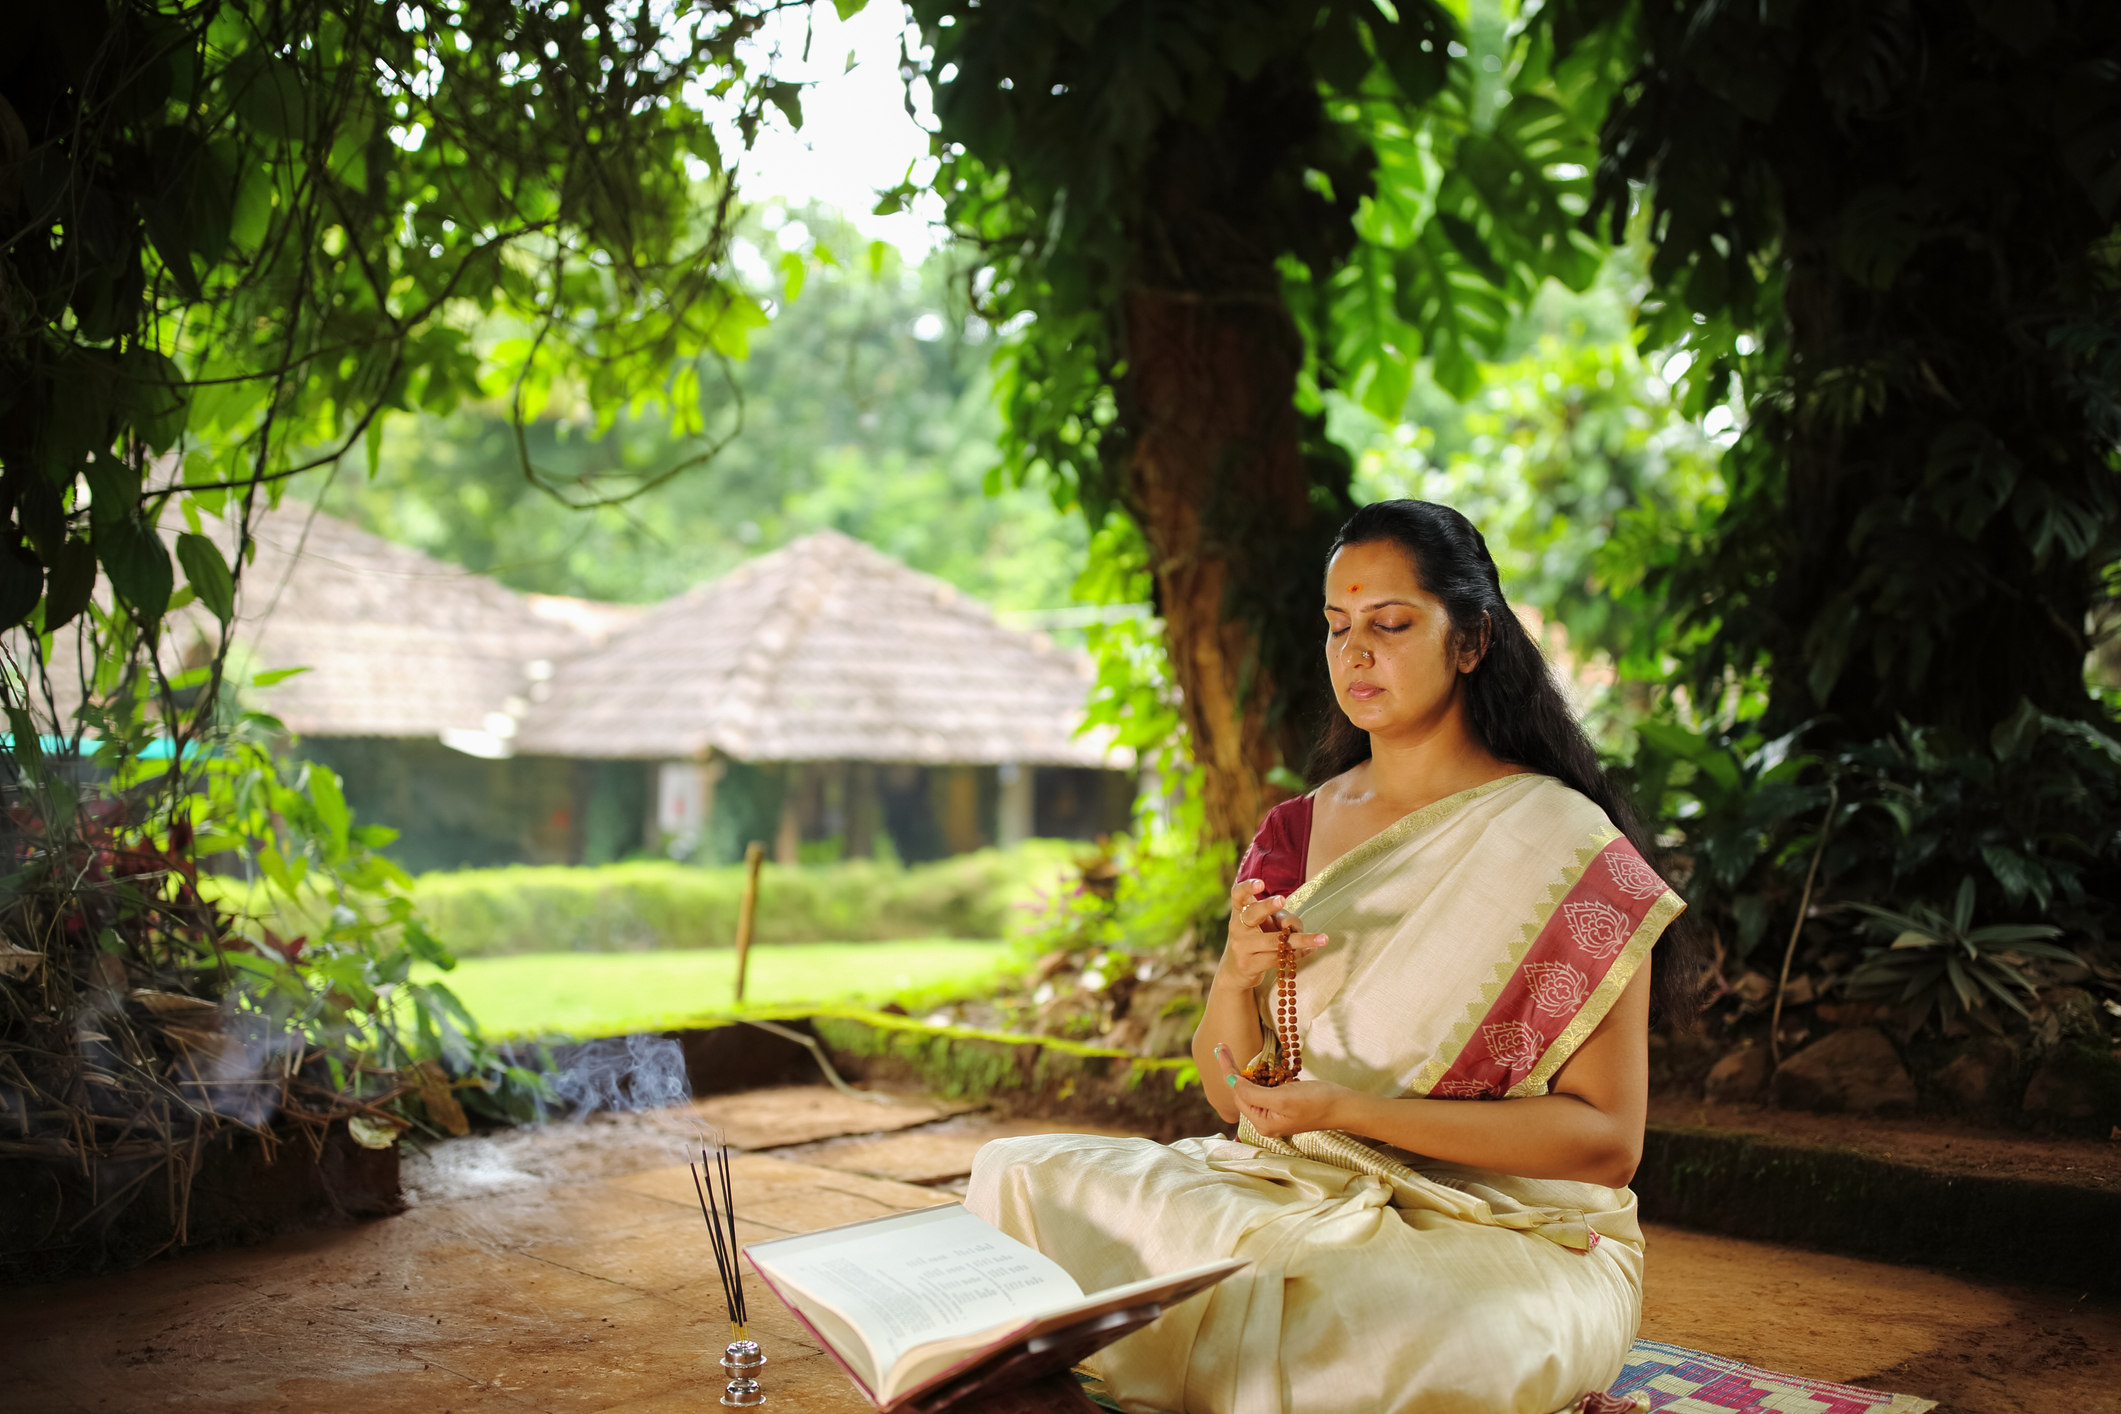 Featured image: Hindu studies - Read full post: Can Hindus engage in Hindu Studies?